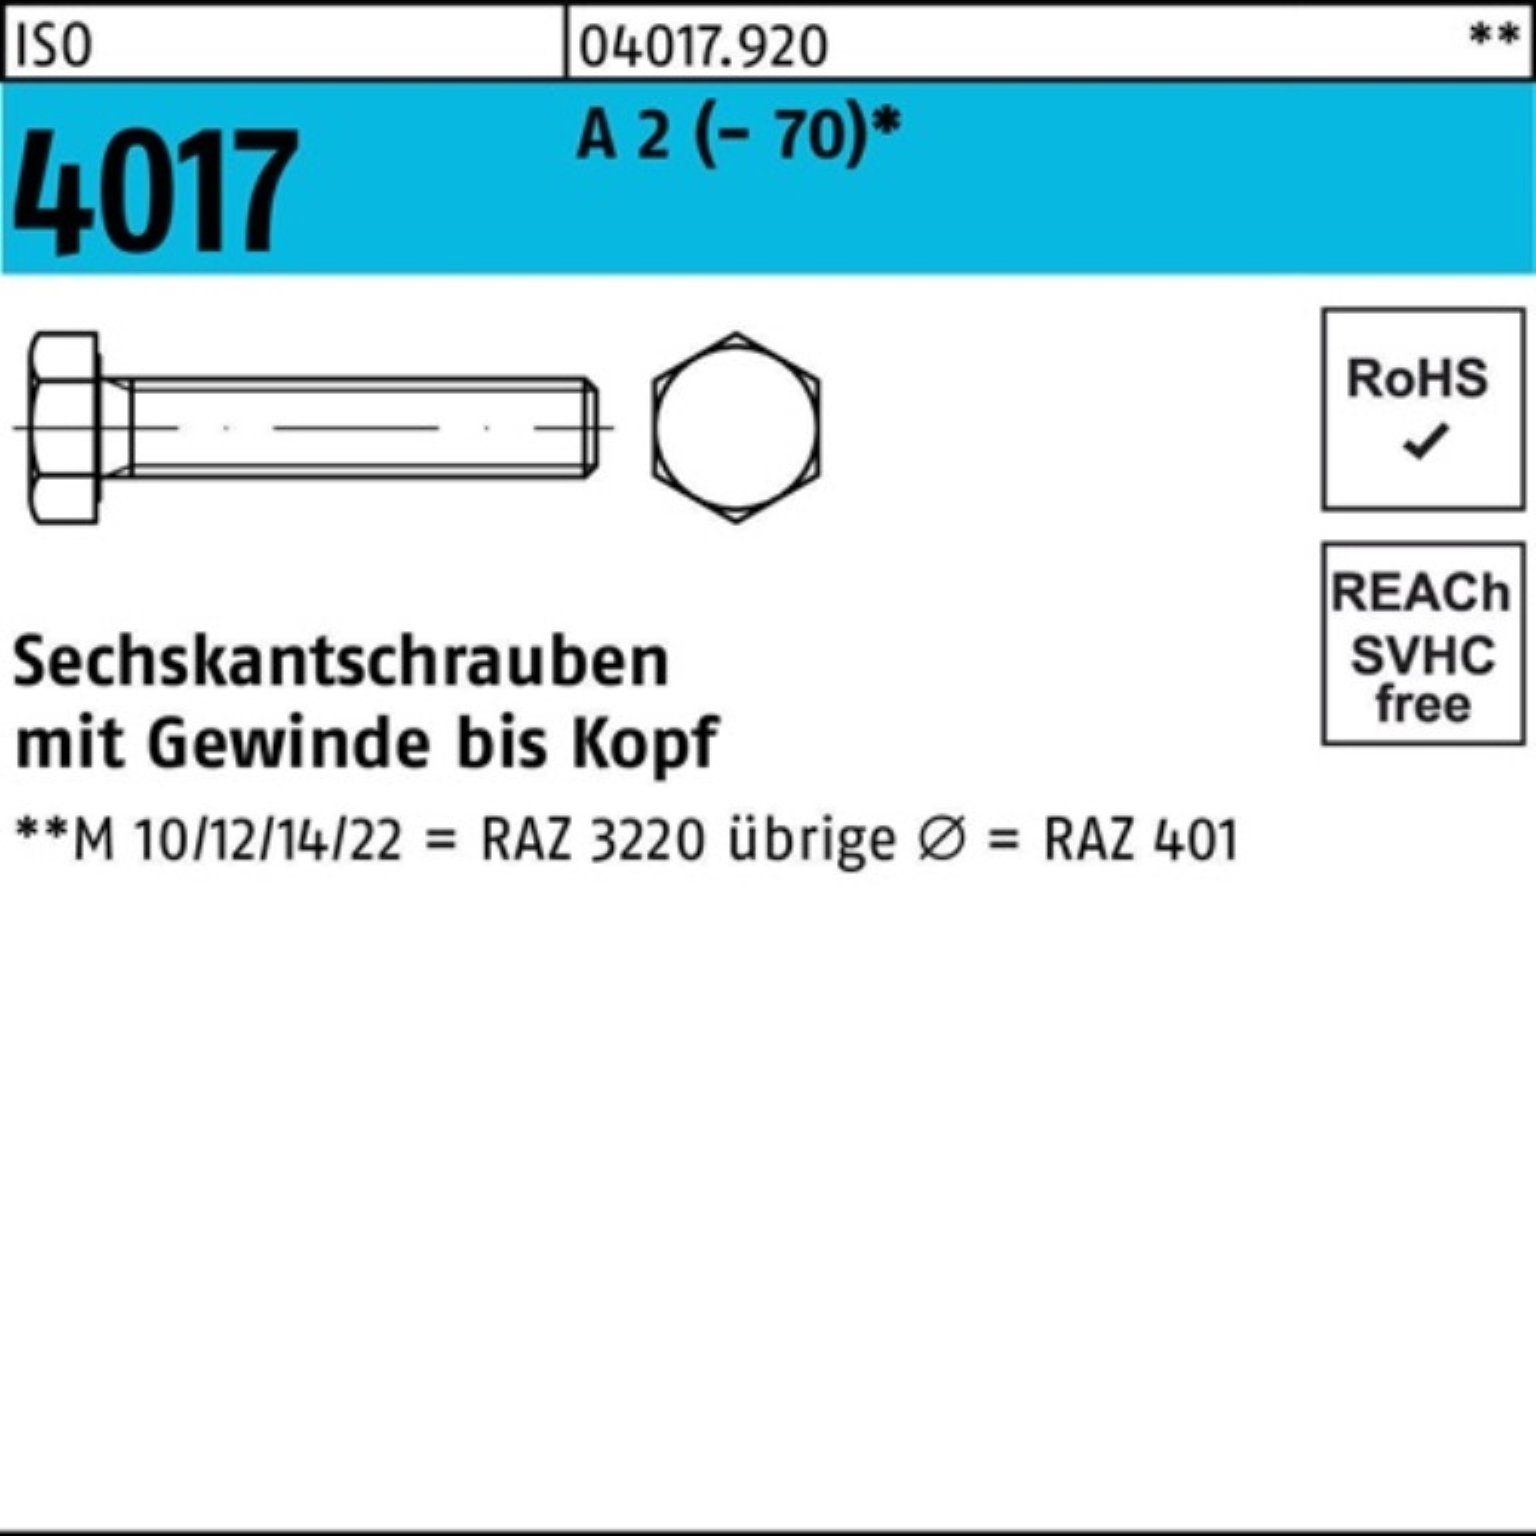 Bufab Sechskantschraube 100er Pack Sechskantschraube ISO 4017 VG M10x 100 A 2 (70) 50 Stück